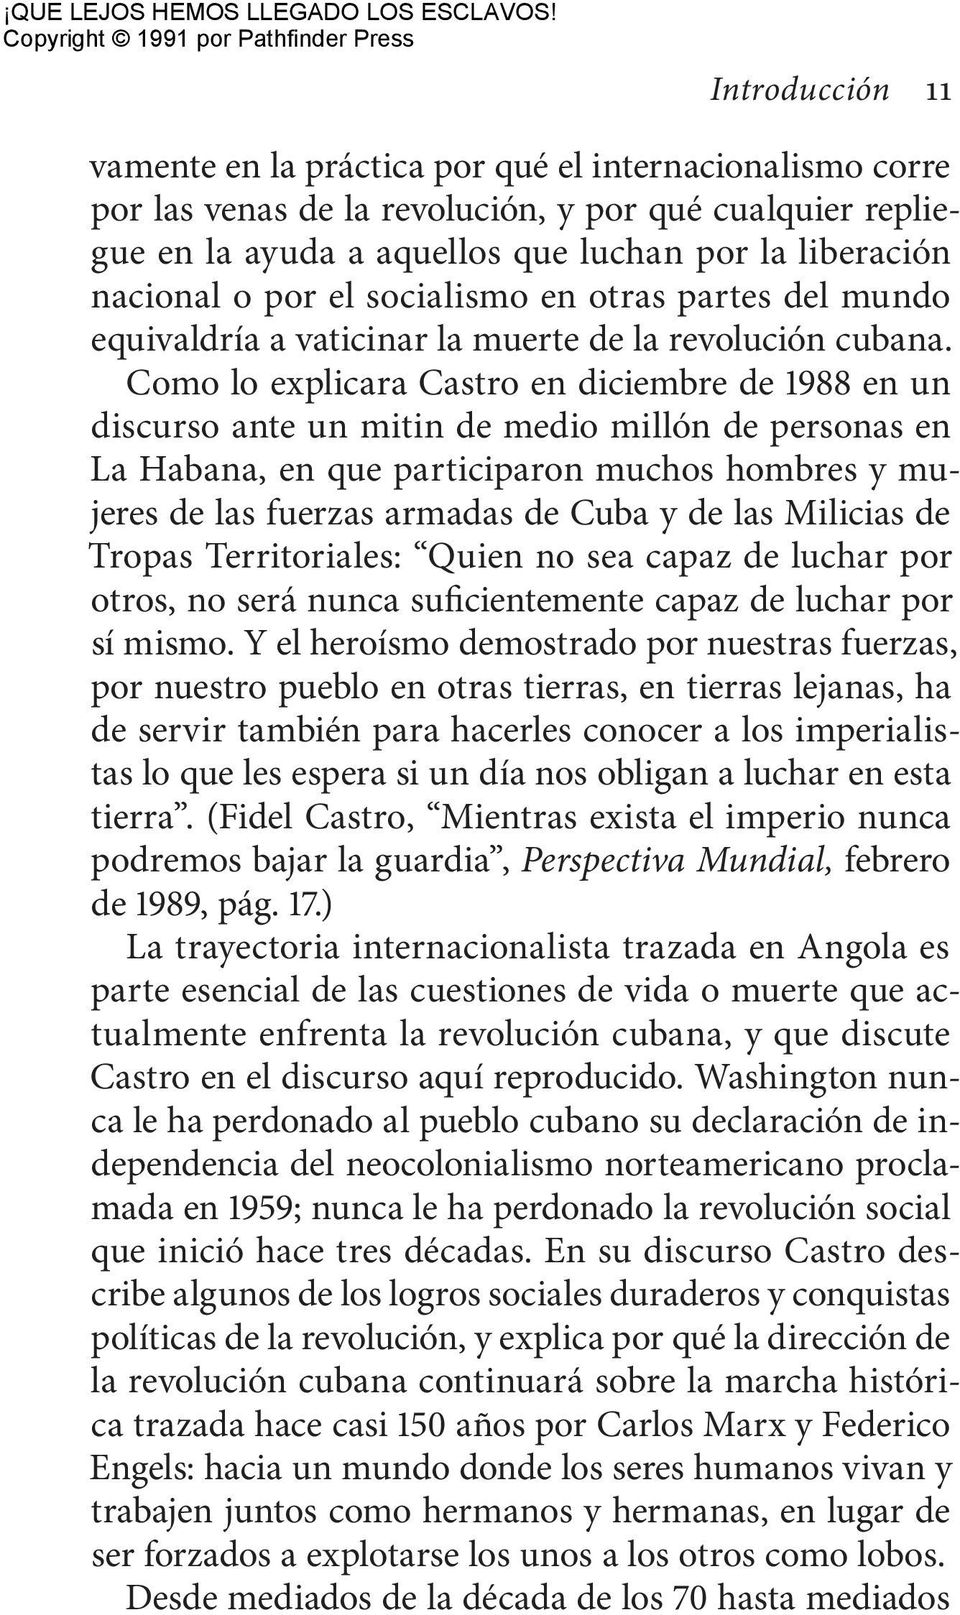 Como lo explicara Castro en diciembre de 1988 en un discurso ante un mitin de medio millón de personas en La Habana, en que participaron muchos hombres y mujeres de las fuerzas armadas de Cuba y de